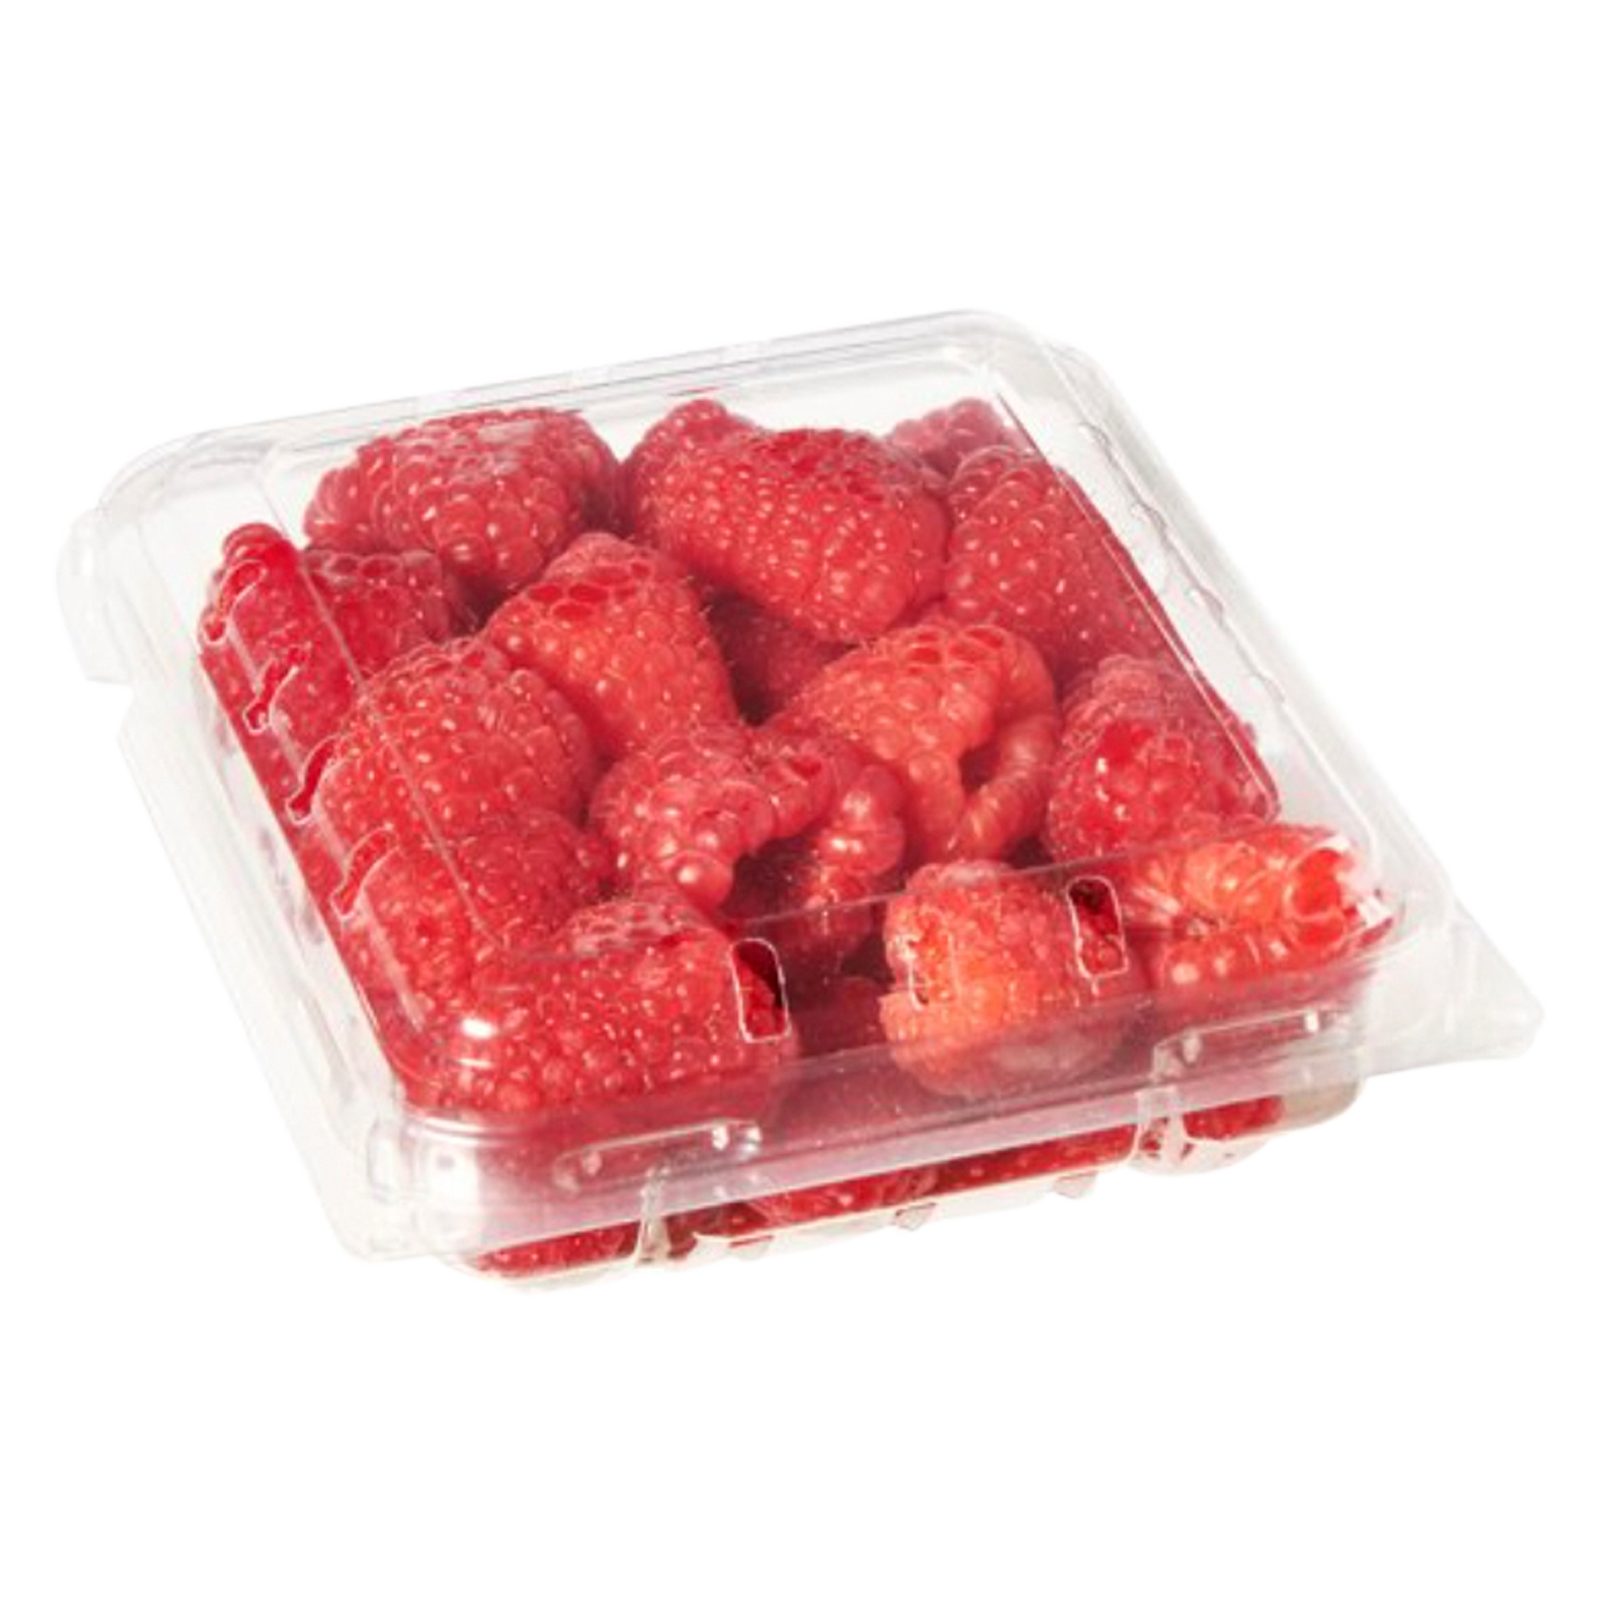 Raspberries 6oz Clamshell